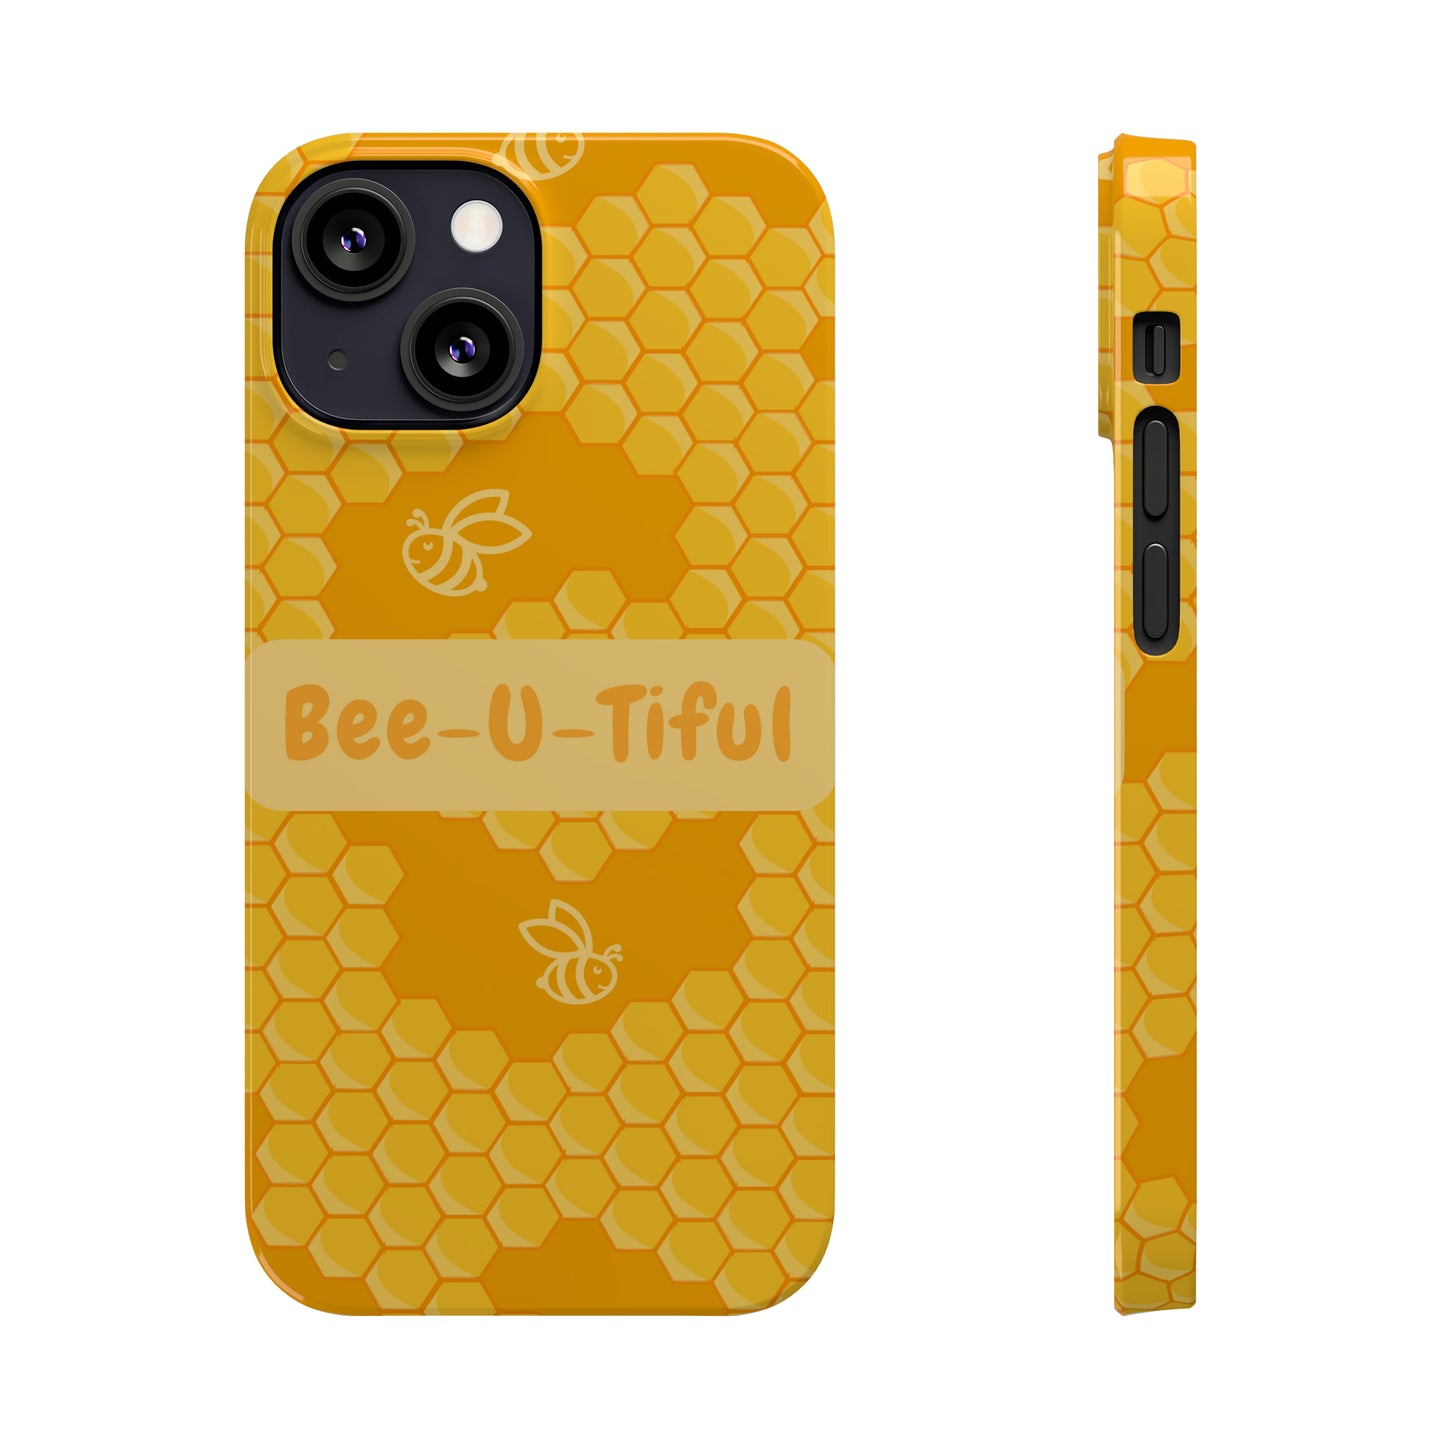 Bee-U-Tiful Slim Phone Cases